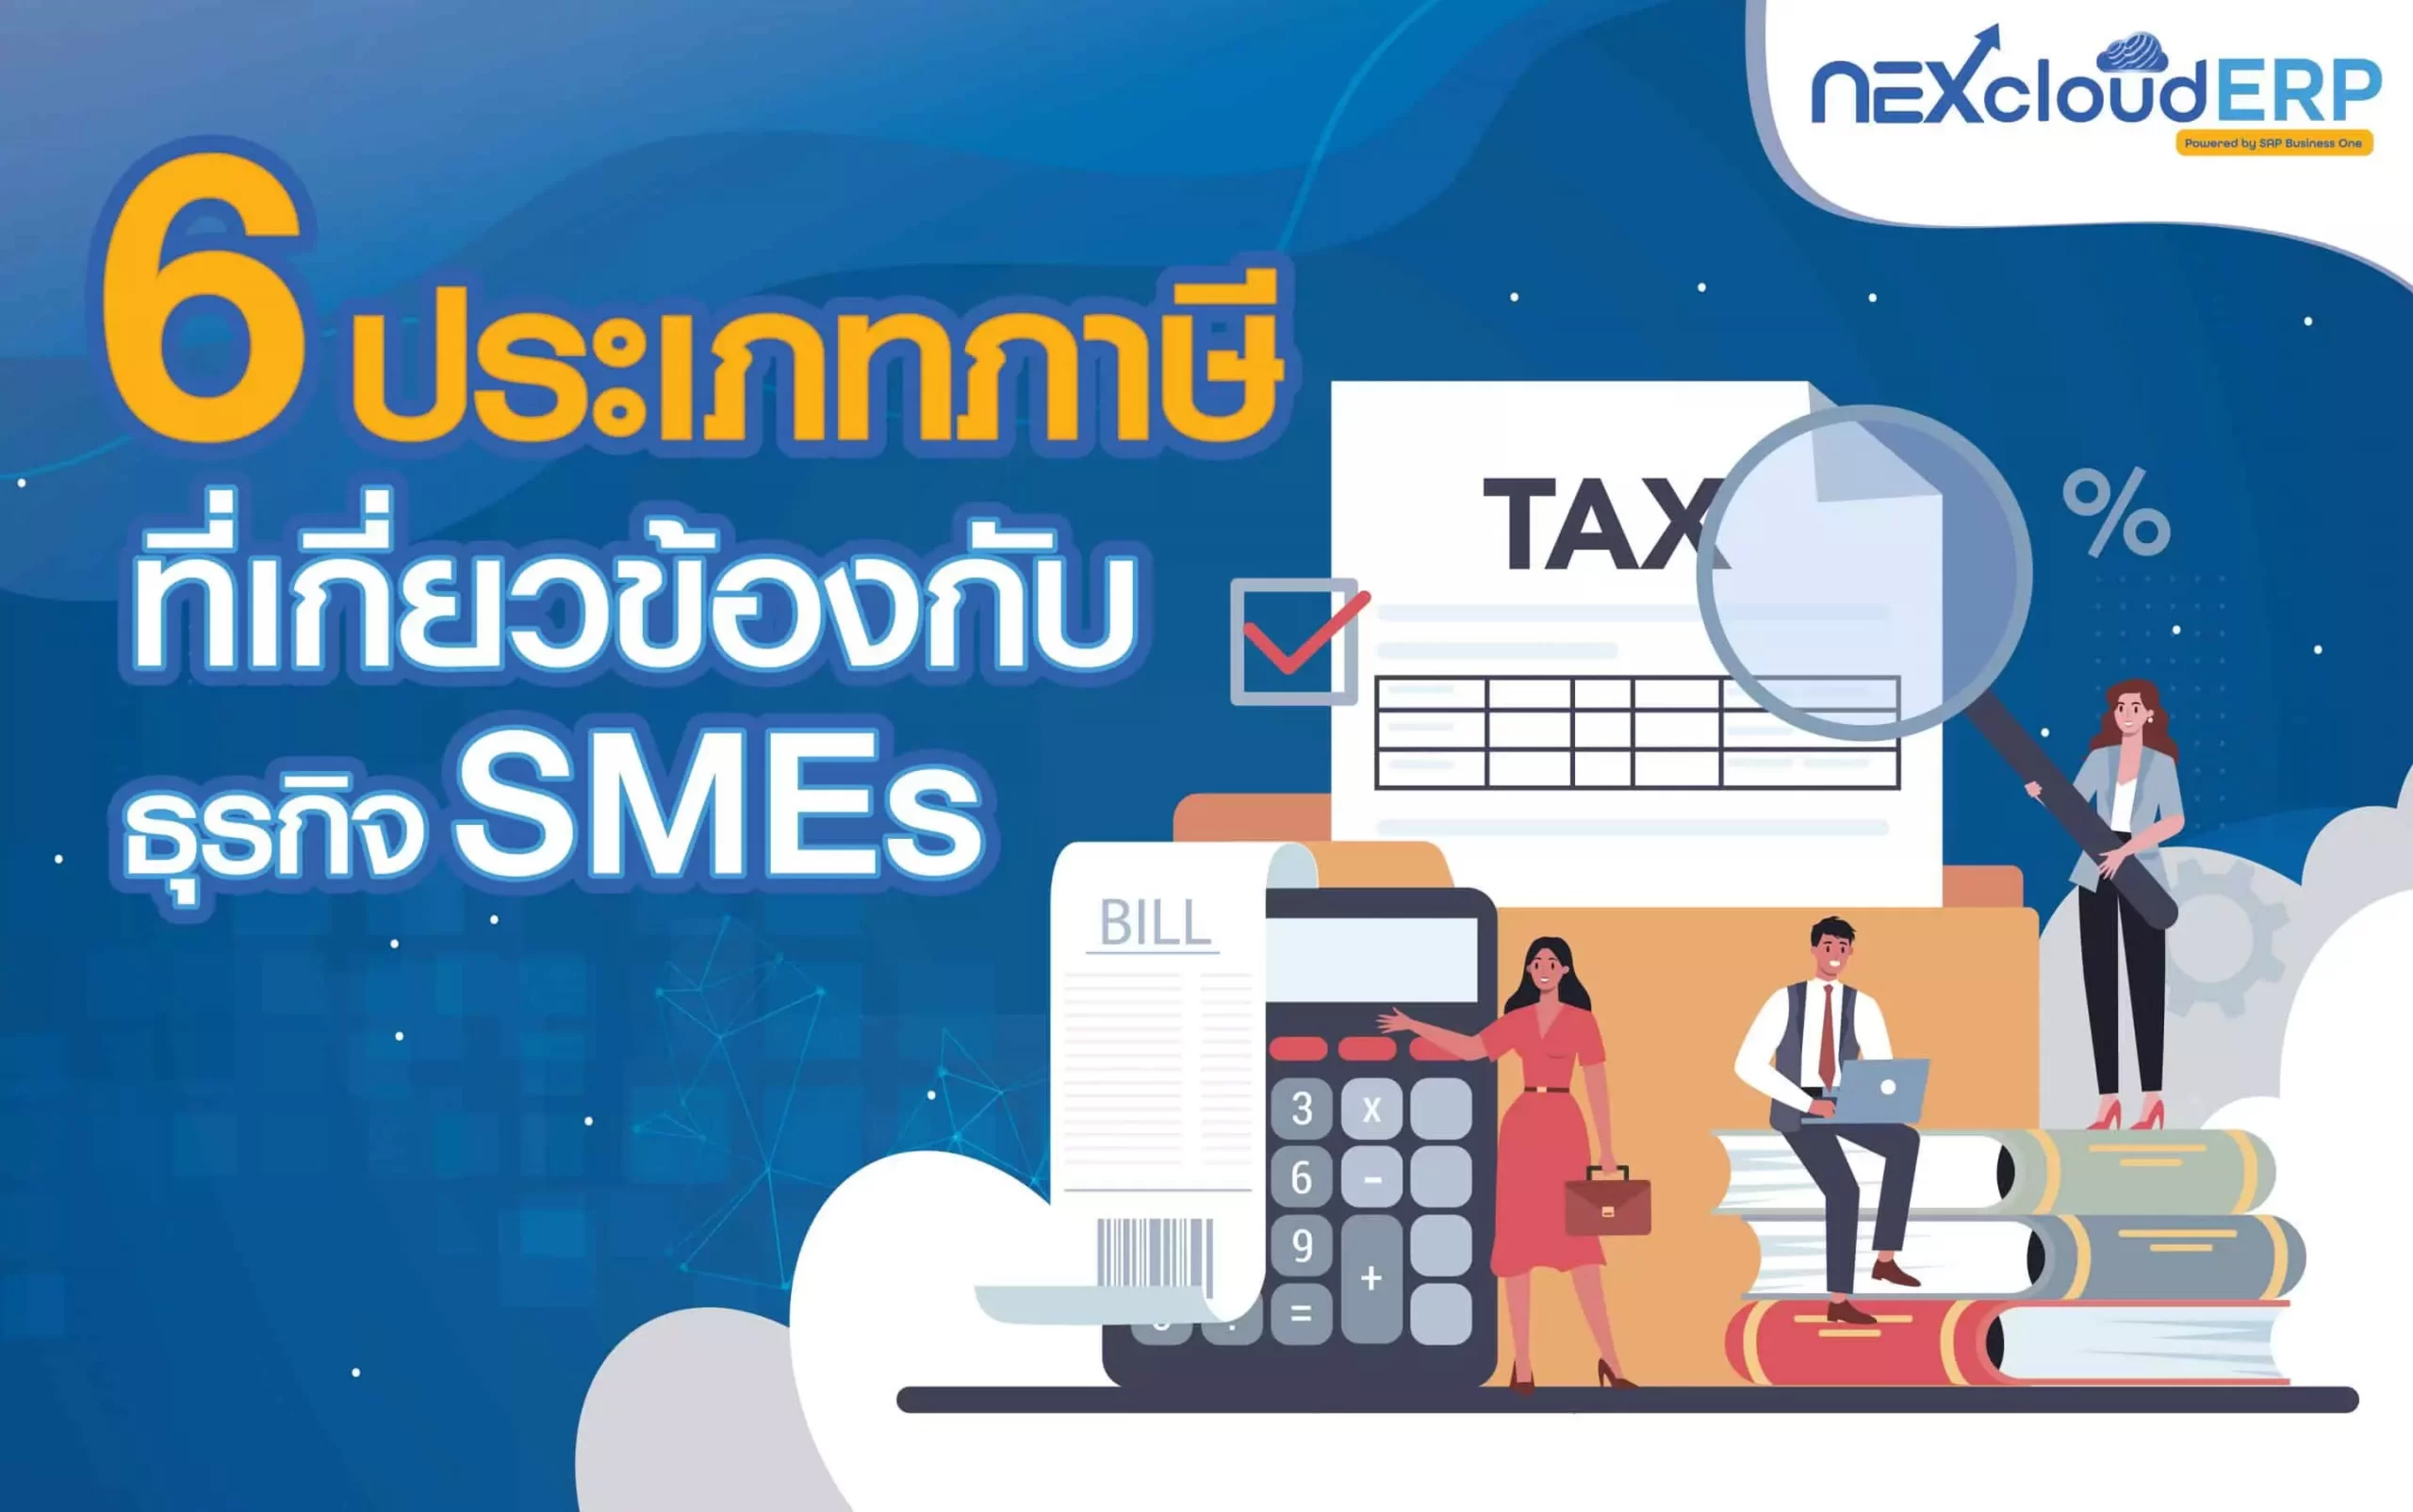 6 ประเภทภาษี ที่เกี่ยวข้องกับ SMEs - NEXcloud ERP